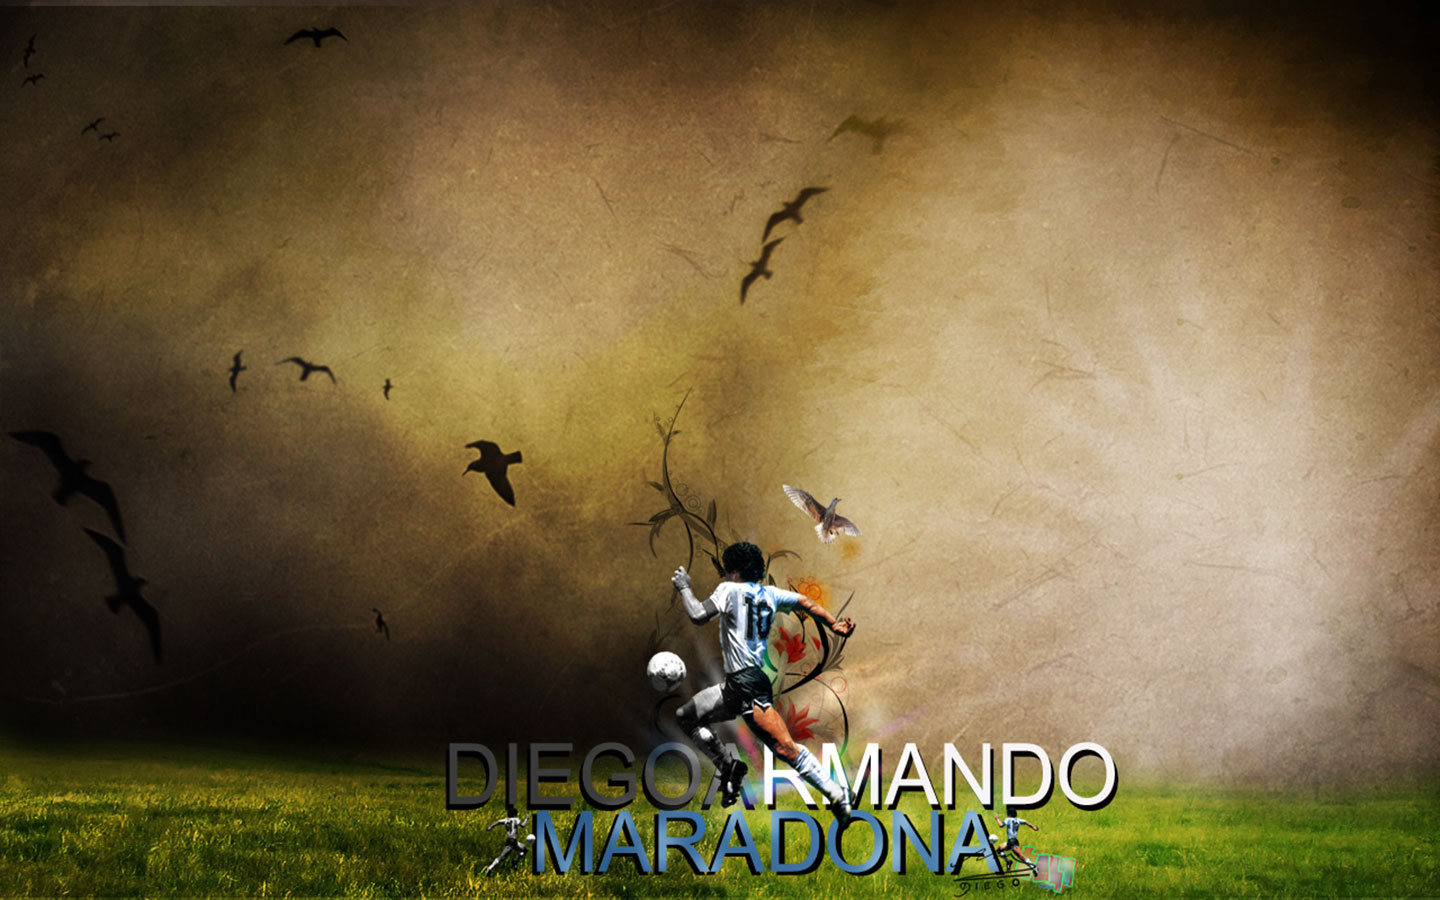 Скачать обои Диего Армандо Марадона на телефон бесплатно